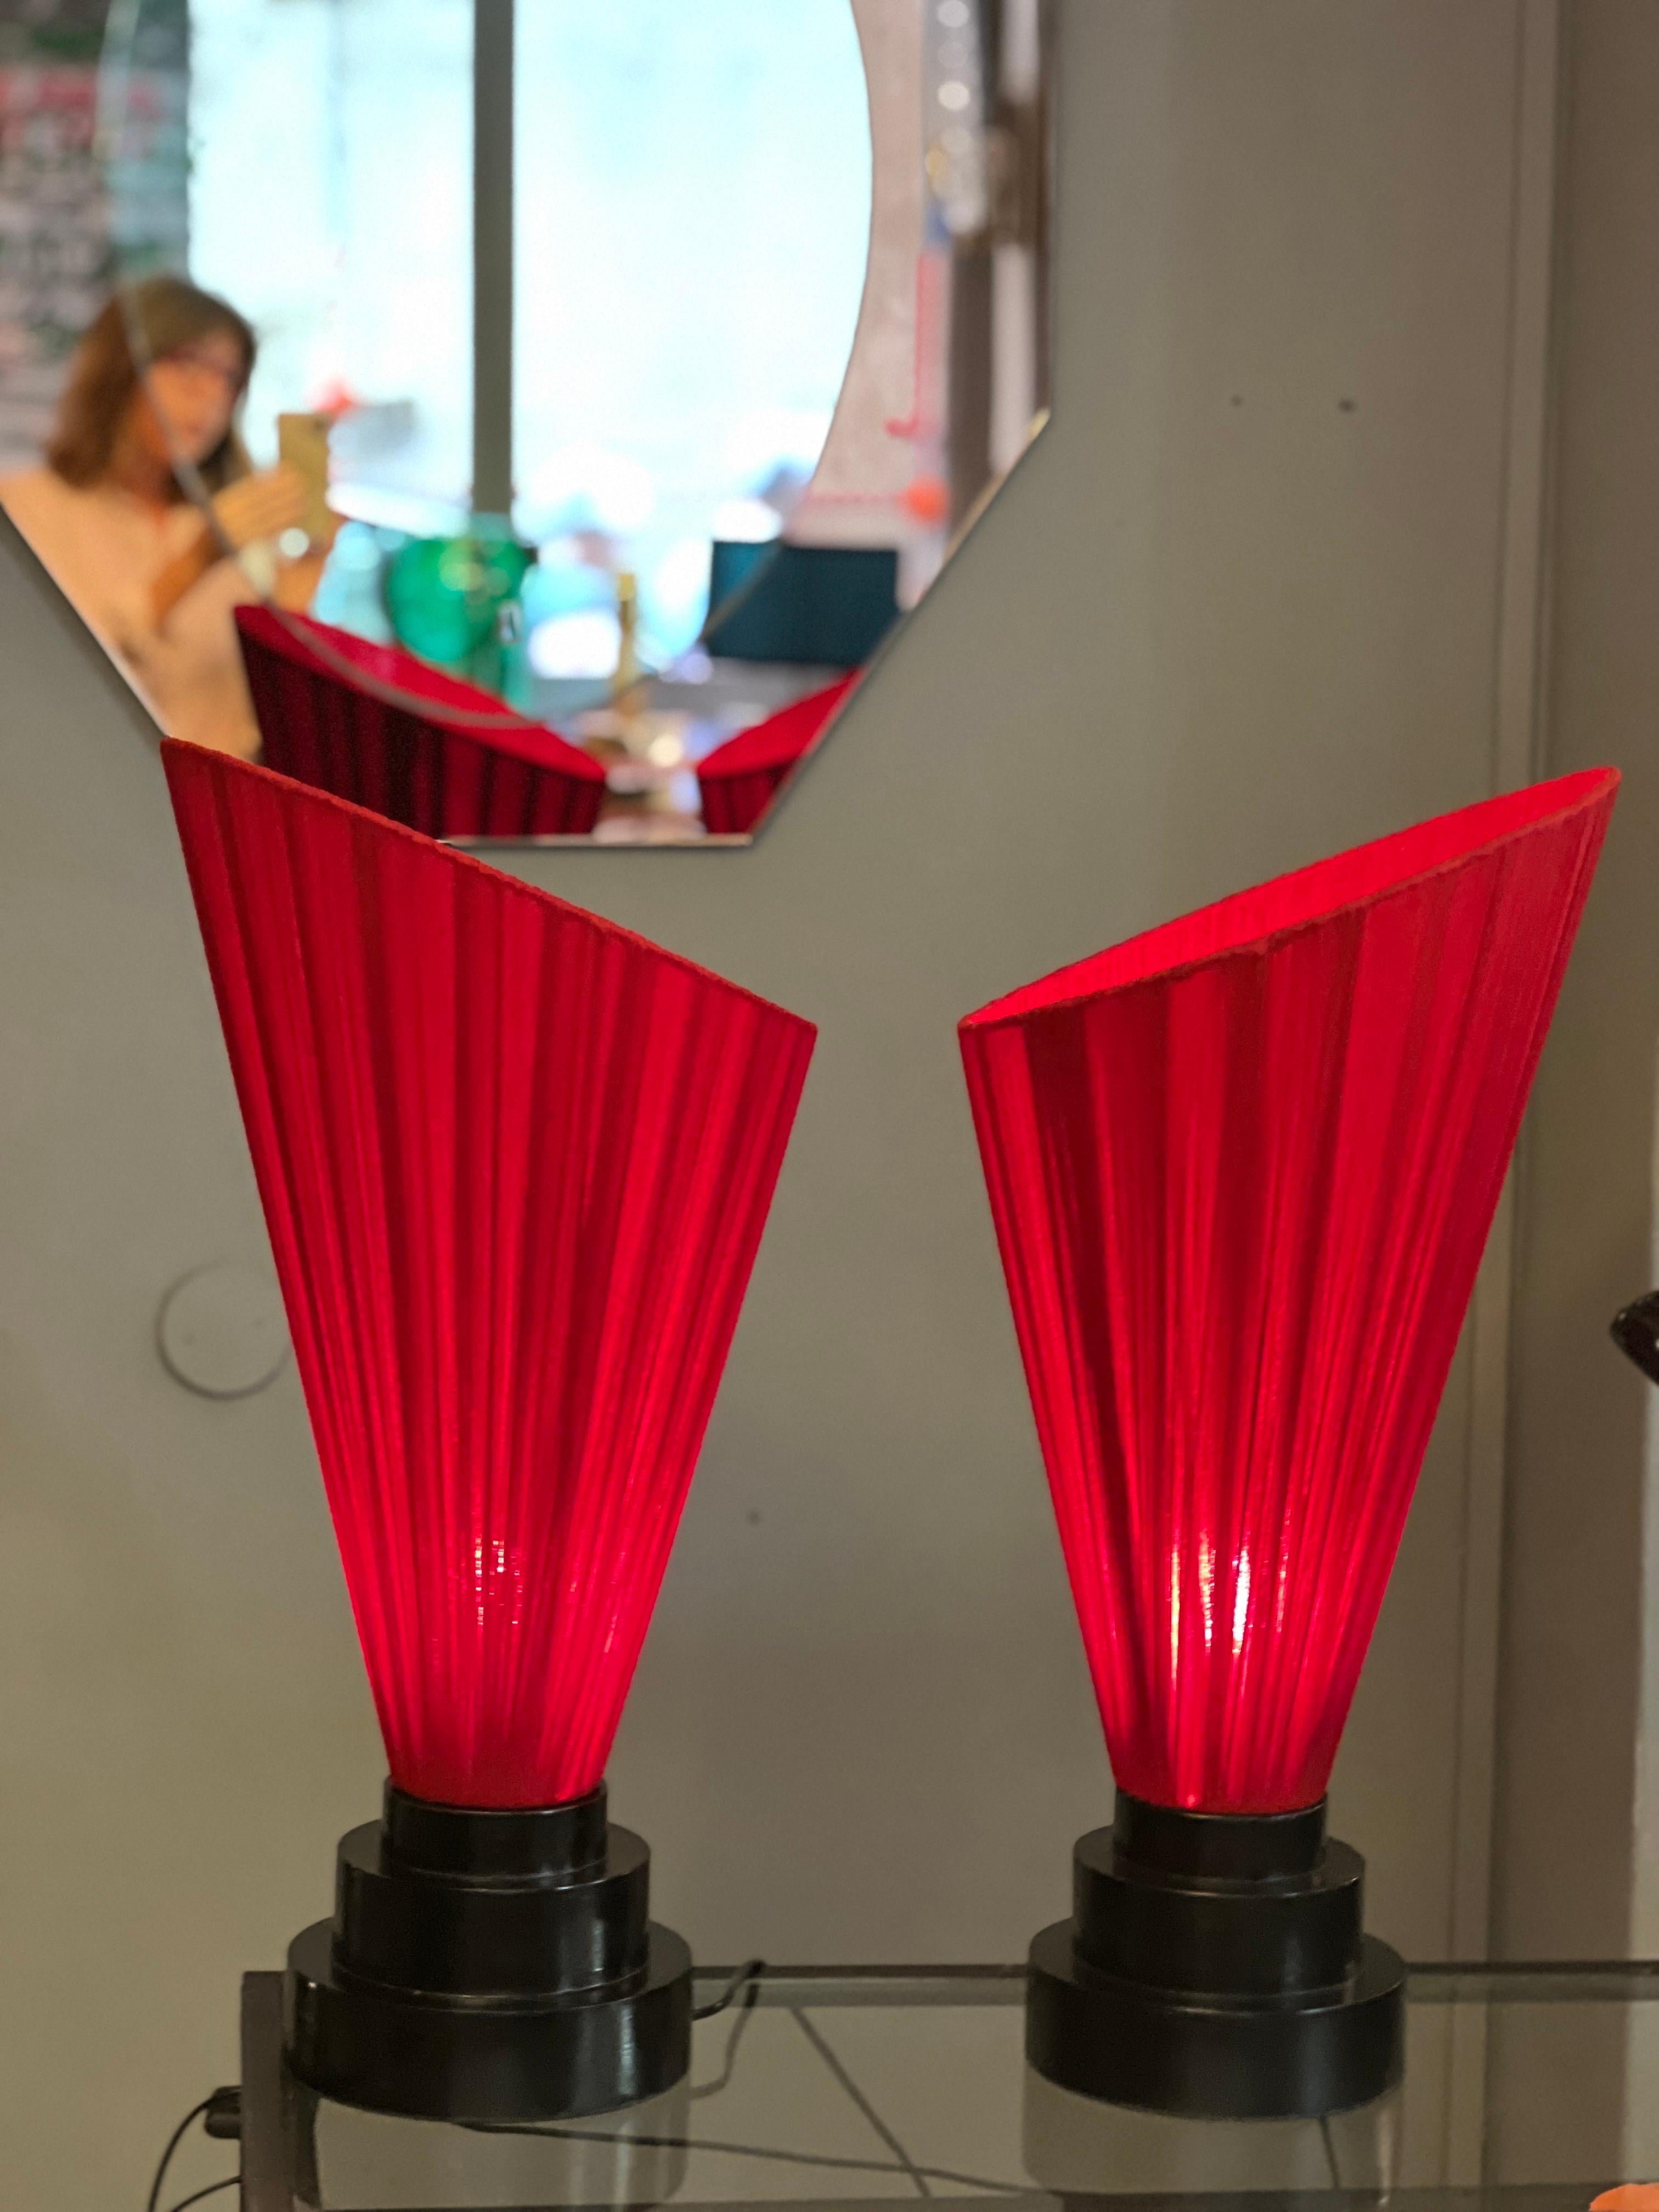 Coppia di lampade vintage con base in legno laccato nero e paralume conico in cotone garzato rosso increspato a mano.
Una lampadina regolare per lampada.